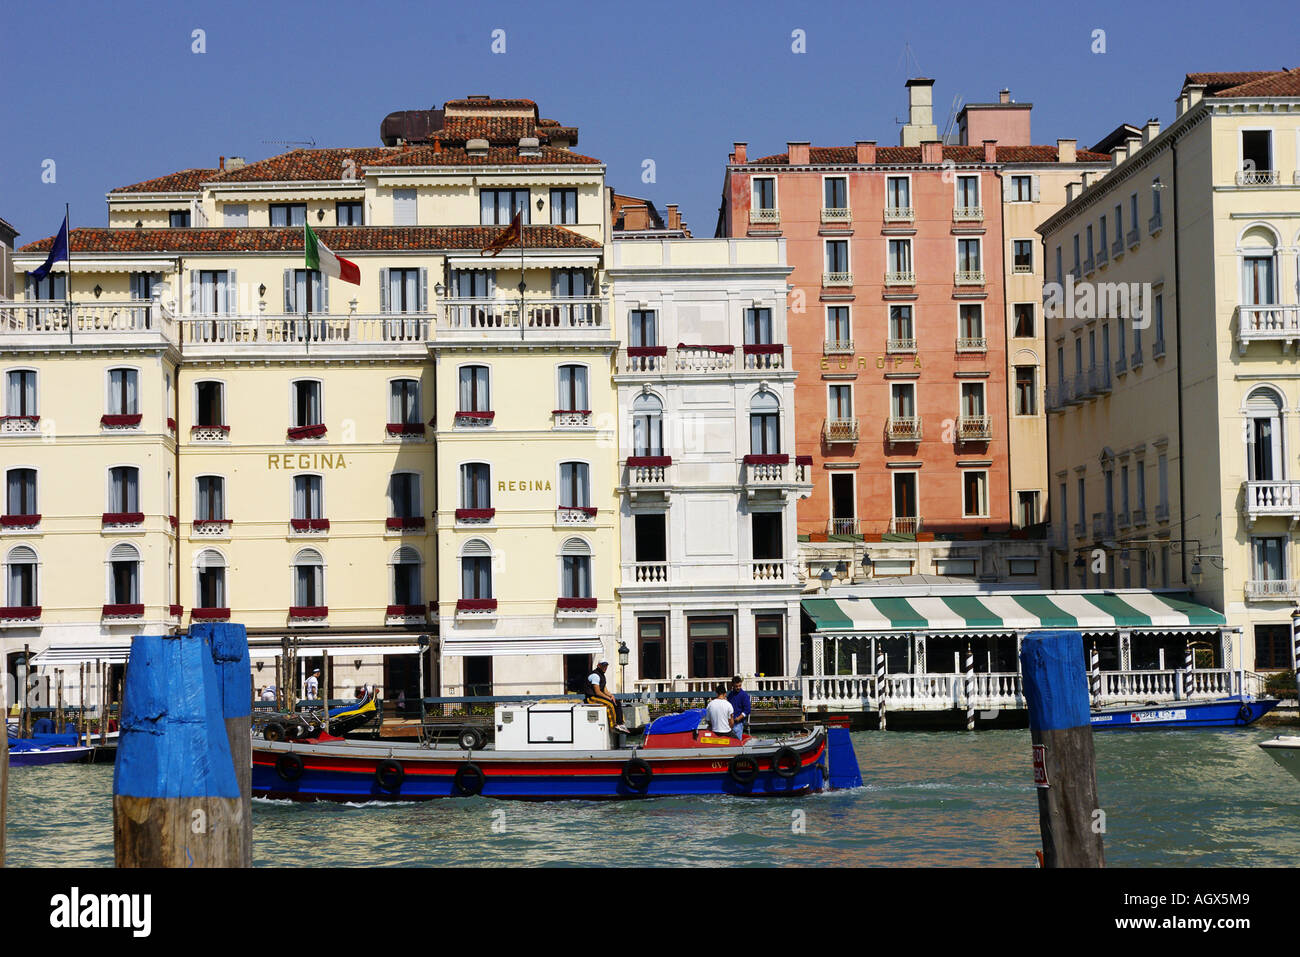 Una vista sul canale con colorati delle gondole e vecchi edifici da persone nel caffè all'aperto Foto Stock